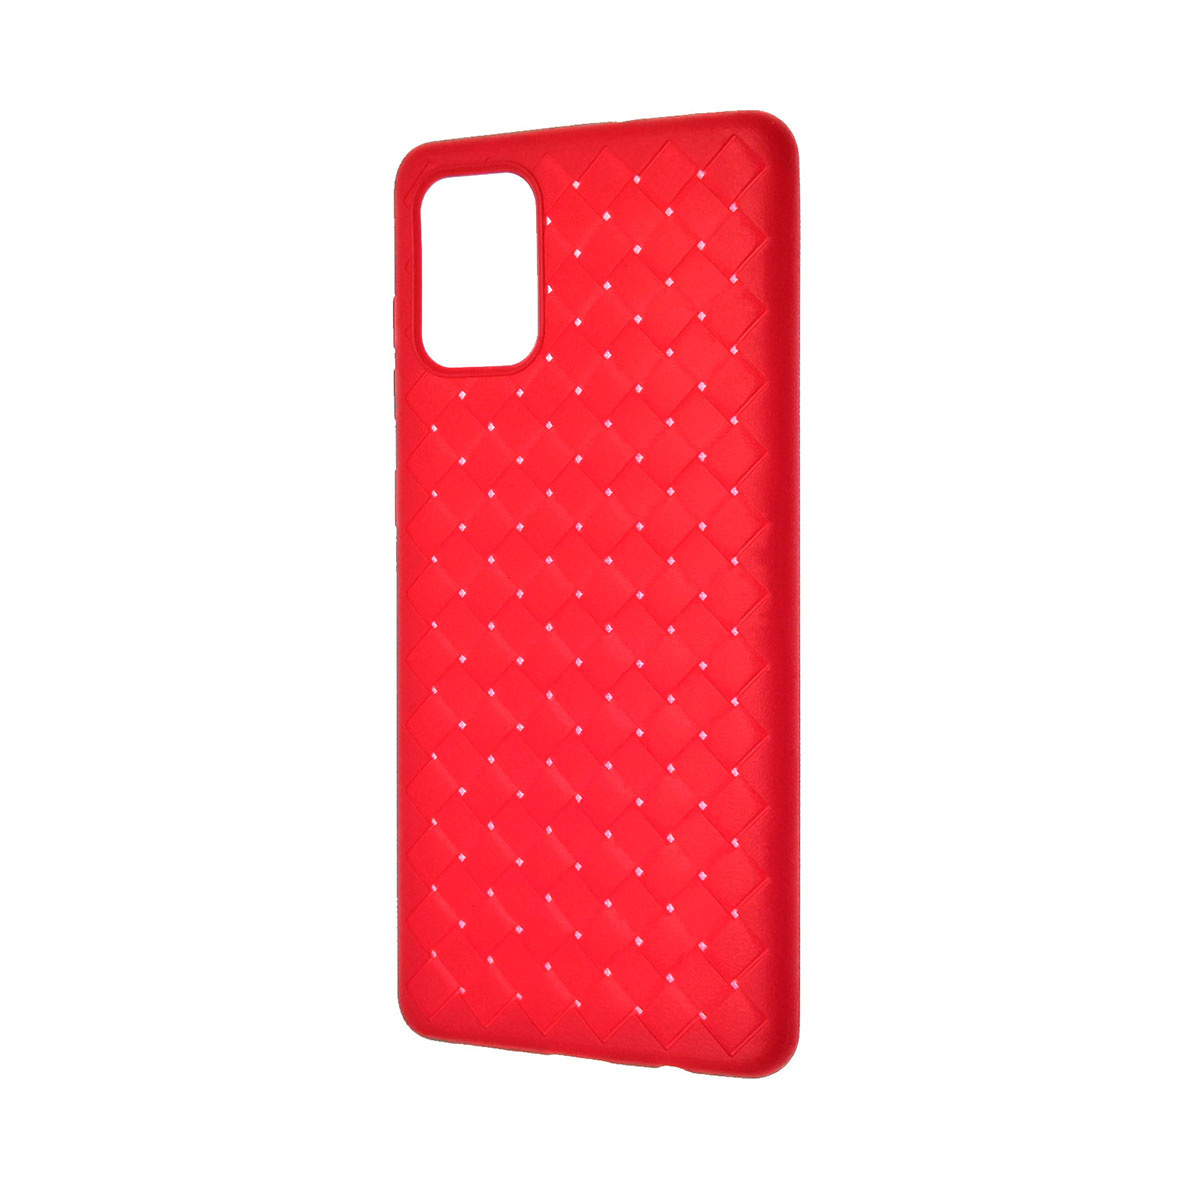 Чехол накладка для SAMSUNG Galaxy A71 (SM-A715), силикон, плетение, цвет красный.